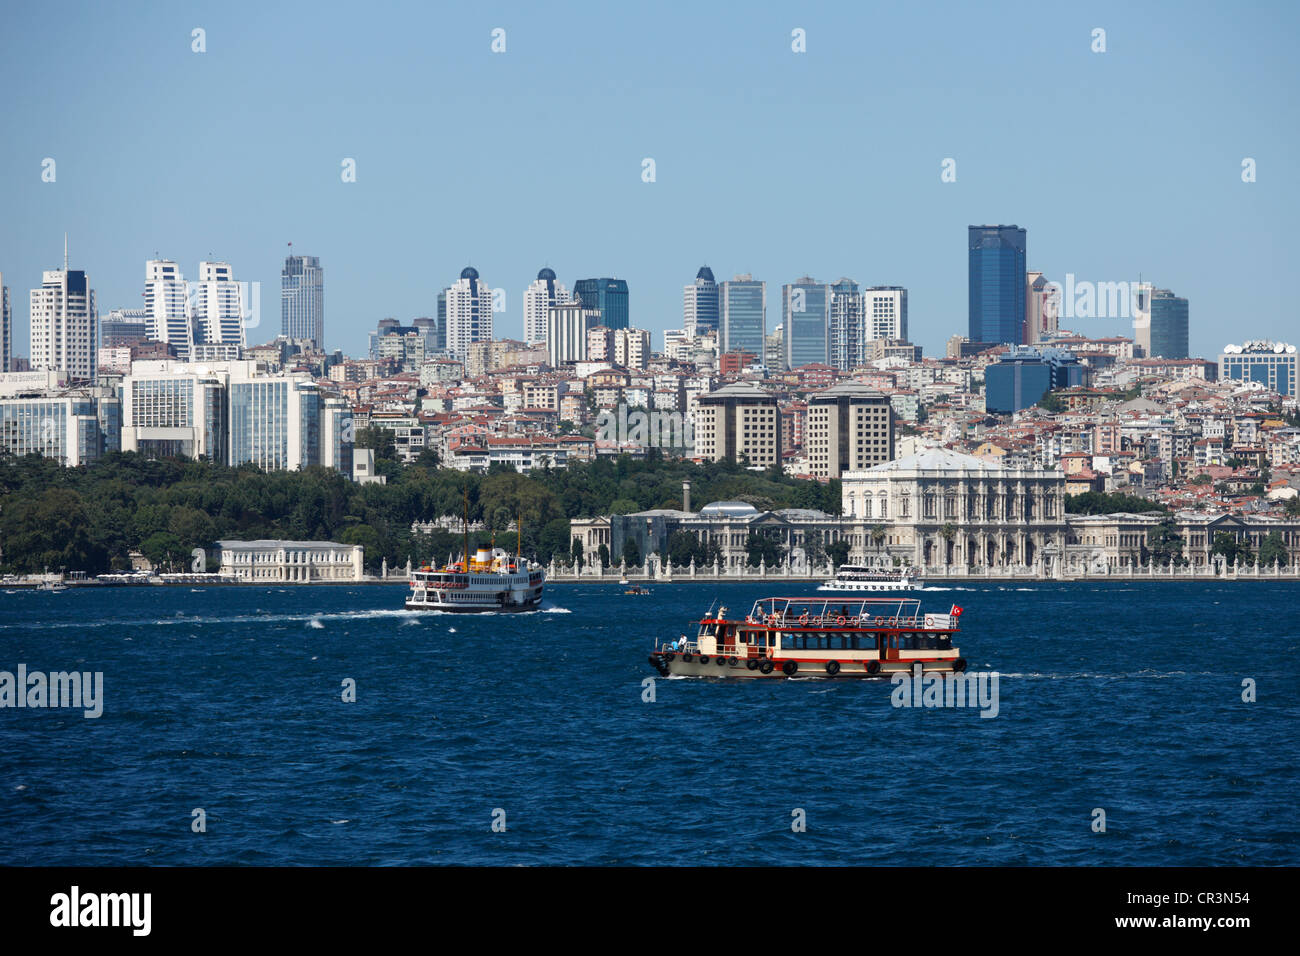 La Turquie, Istanbul, Besiktas, District de Dolmabahçe Sarayi (Palais Dolmabahce) sur le bord du Bosphore, construit par le Sultan Banque D'Images